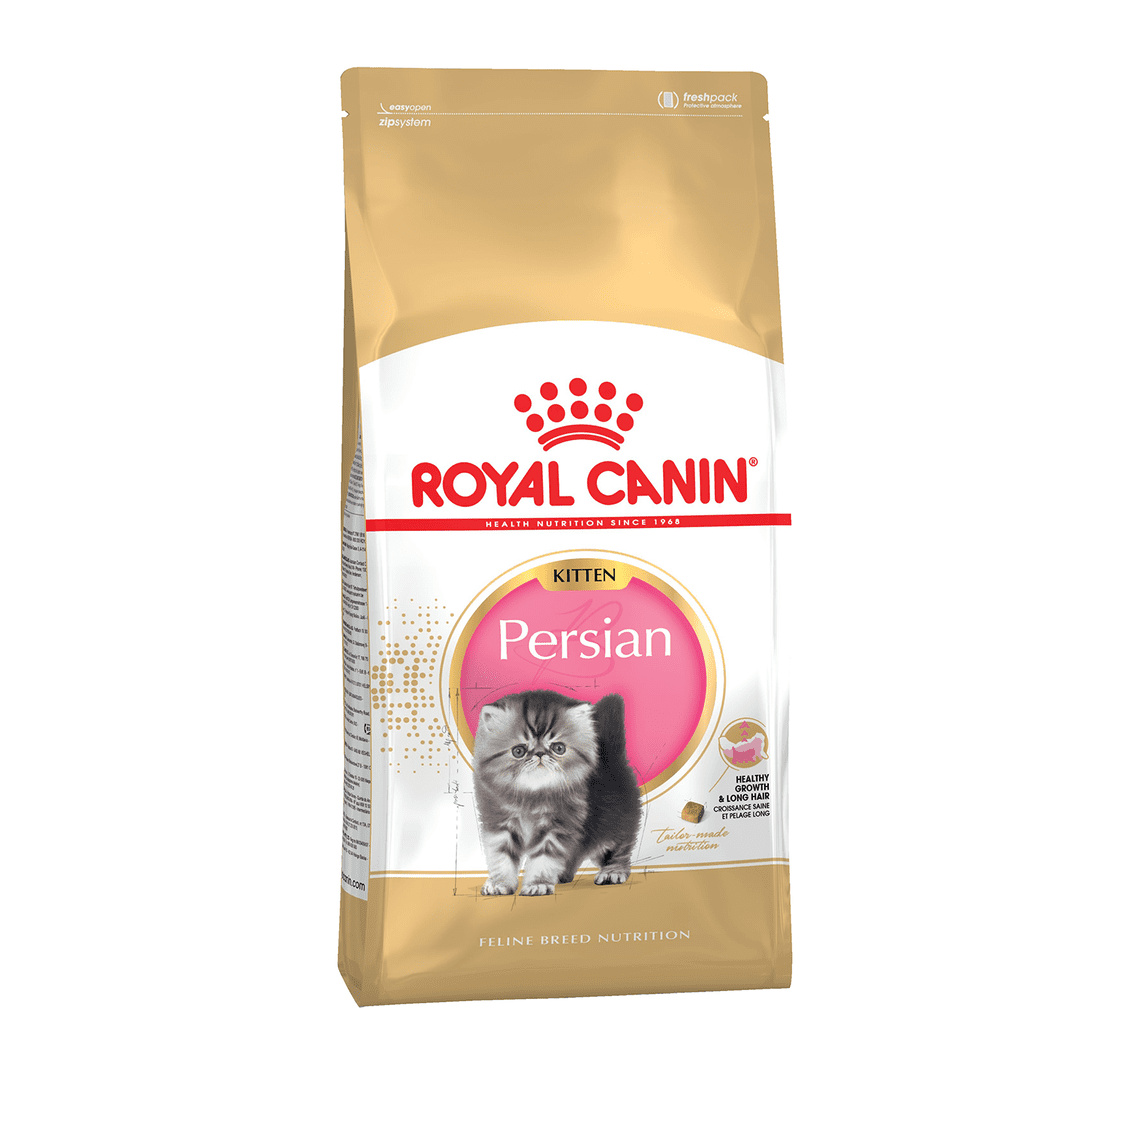 Royal Canin Корм Royal Canin для персидских котят 4-12 мес. (400 г) royal canin корм royal canin корм для британских короткошерстных котят 4 12 мес 400 г